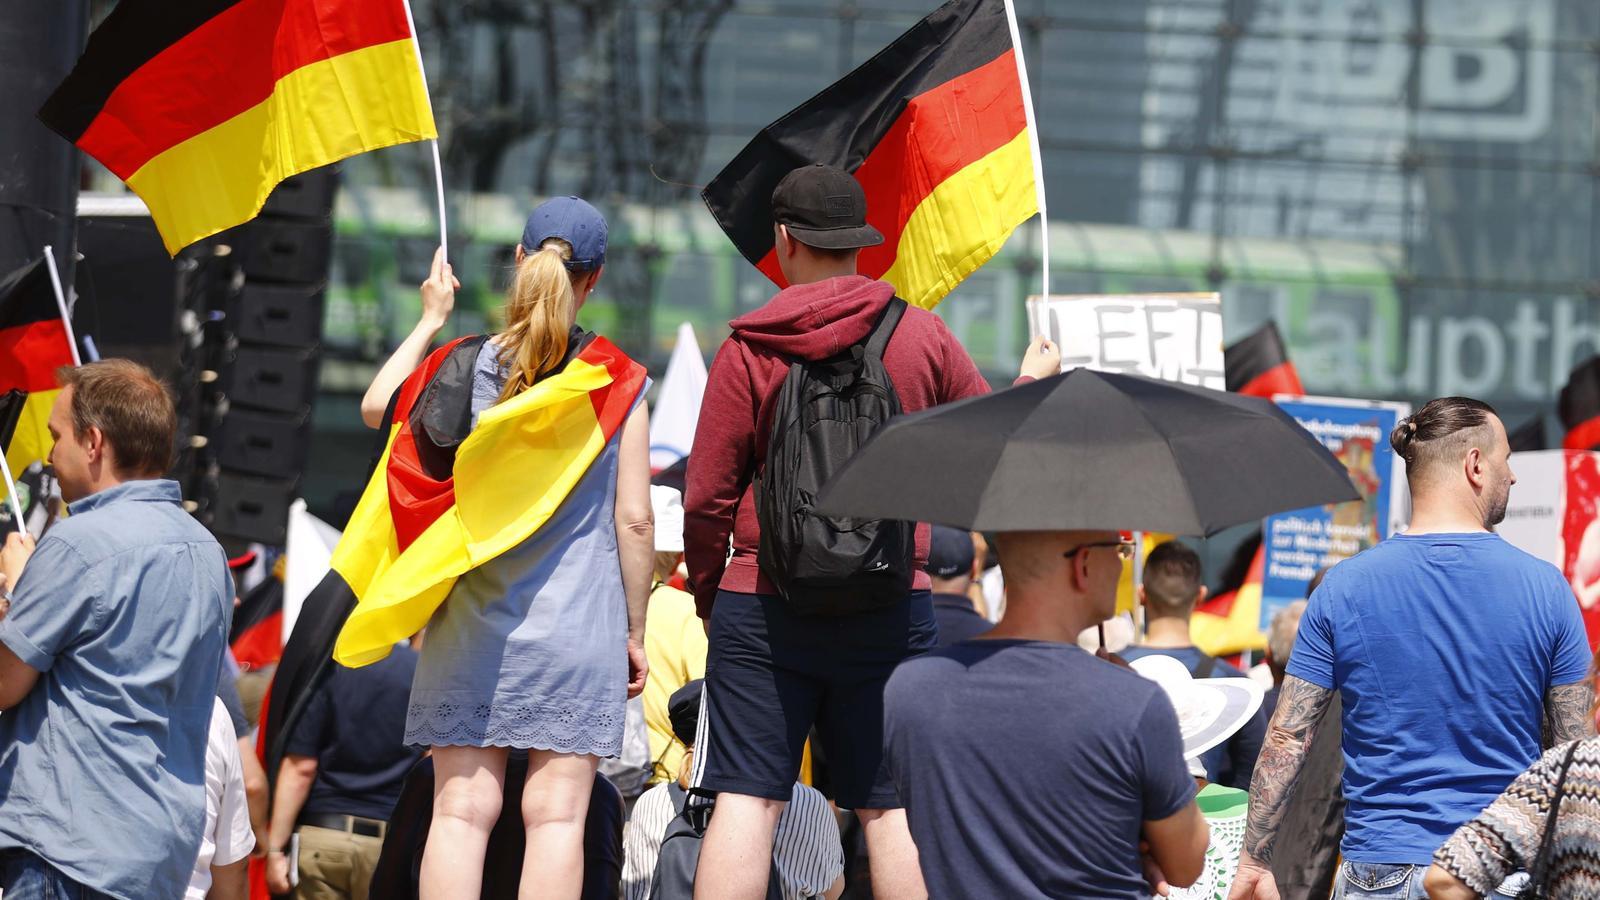 Simpatitzants d'Adf onejant banderes a Alemanya a la manifestació de Berlín / HANNIBAL HANSCHKE / REUTERS